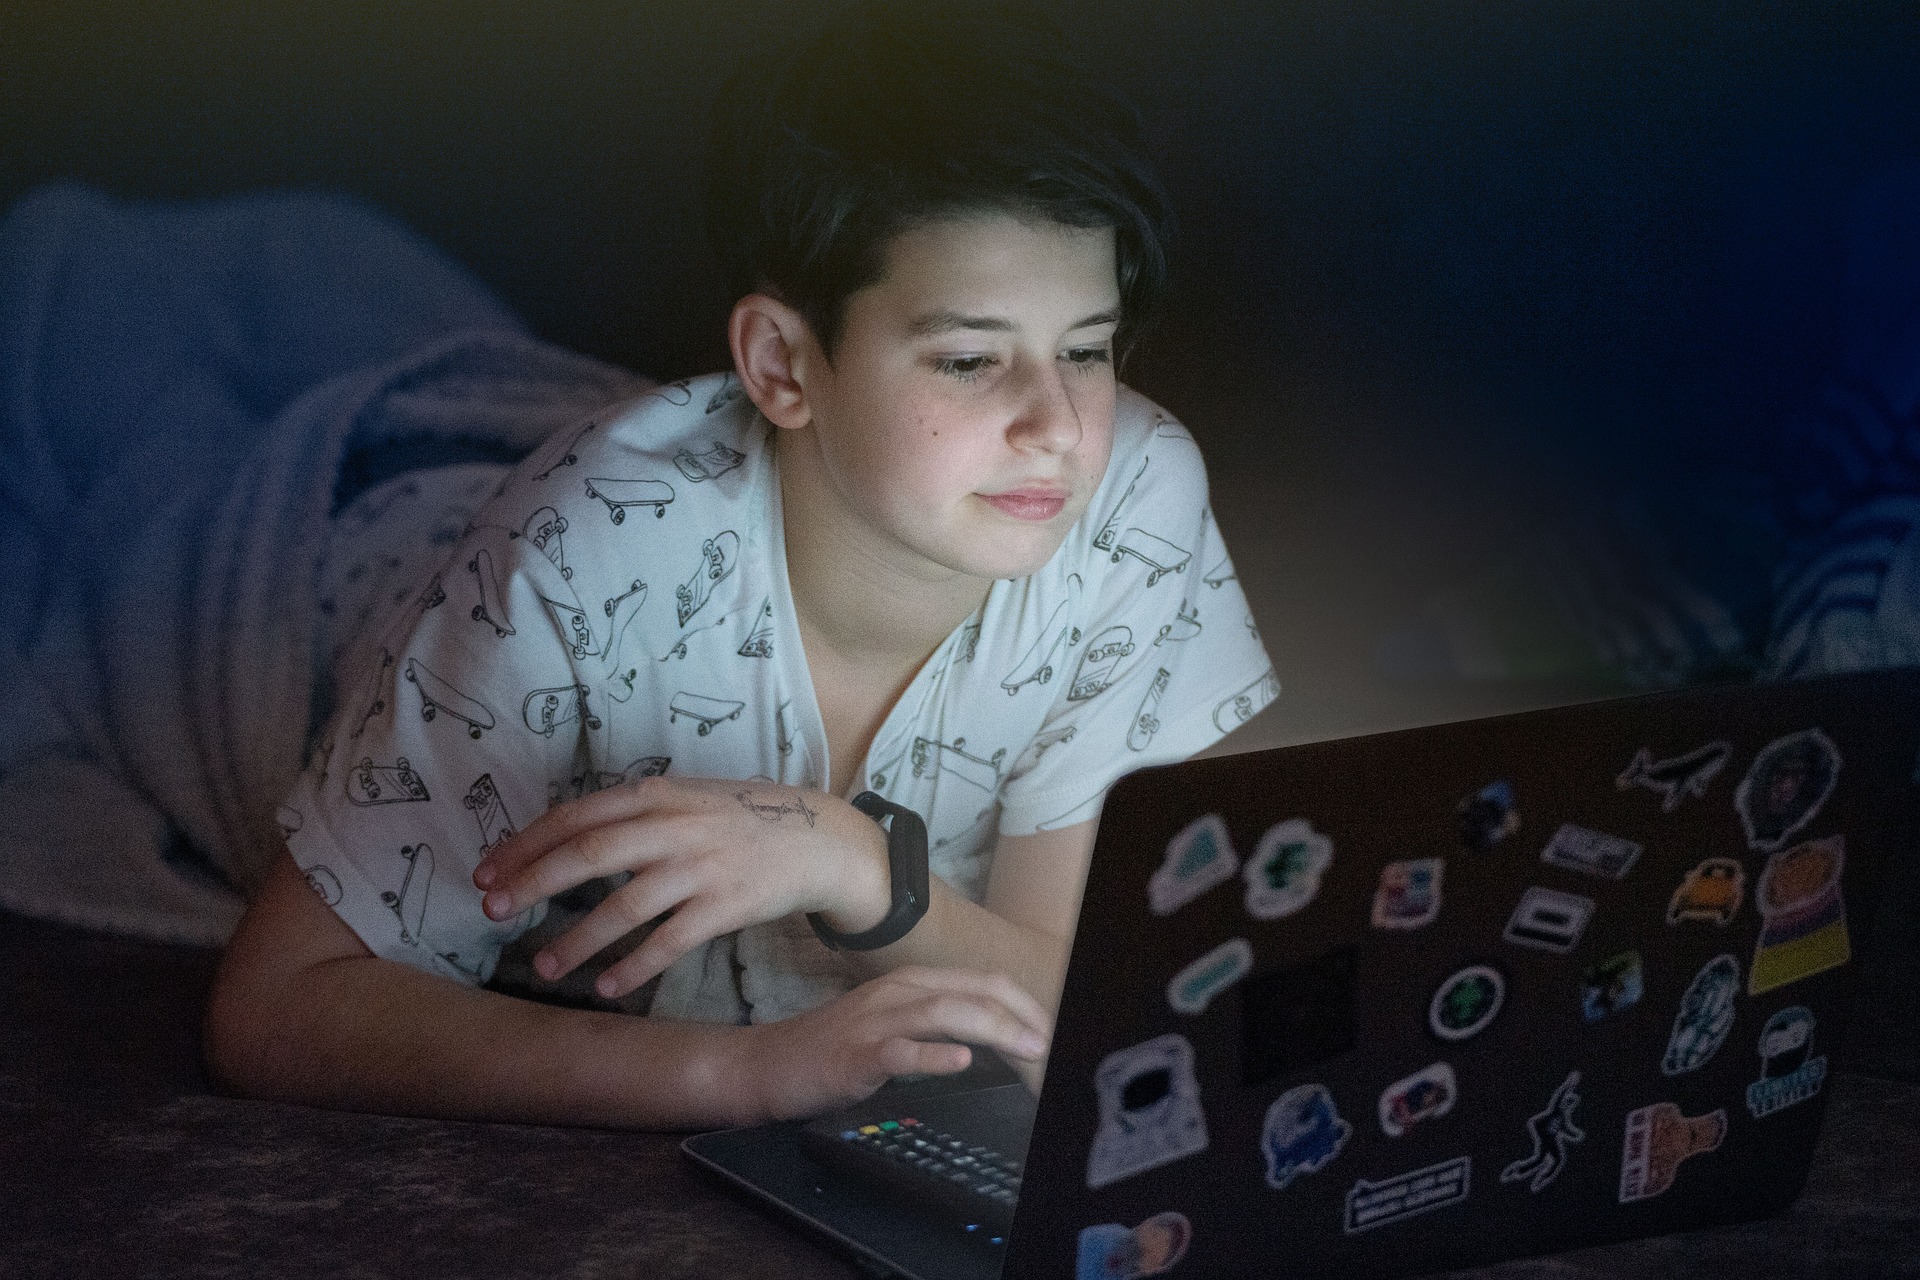 Prvi stik s spletno pornografijo se pri večini zgodi že pred 11. letom starosti